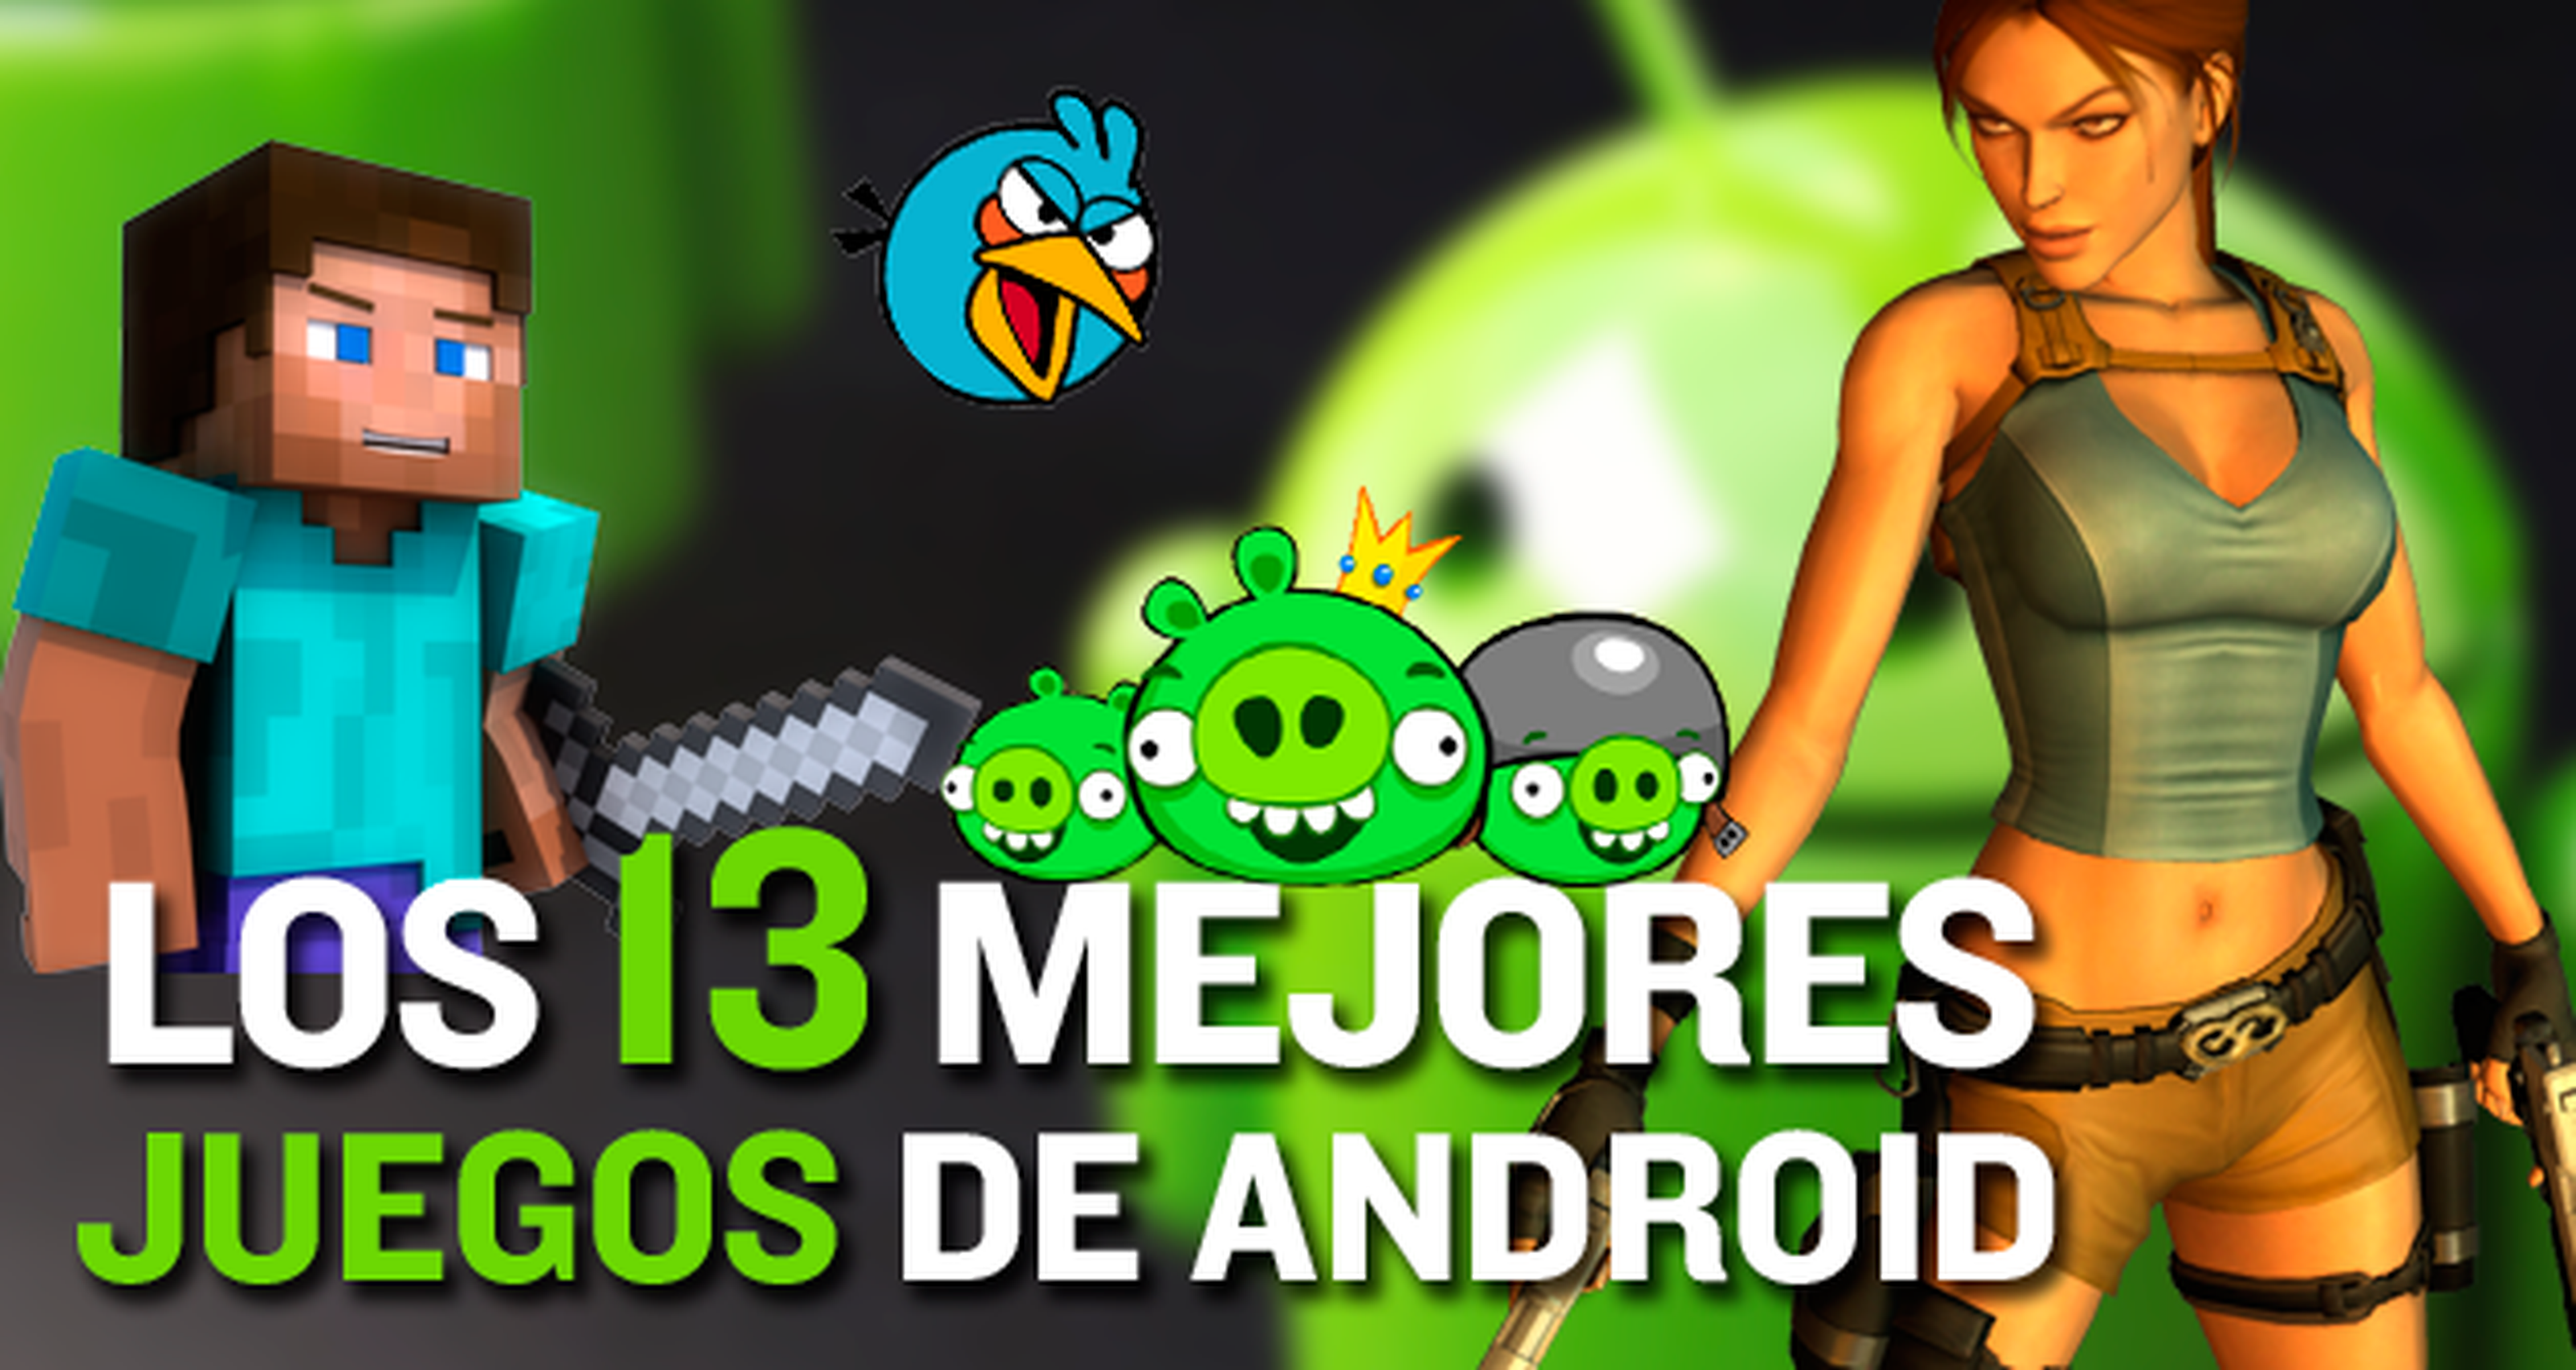 Los 13 mejores juegos Android